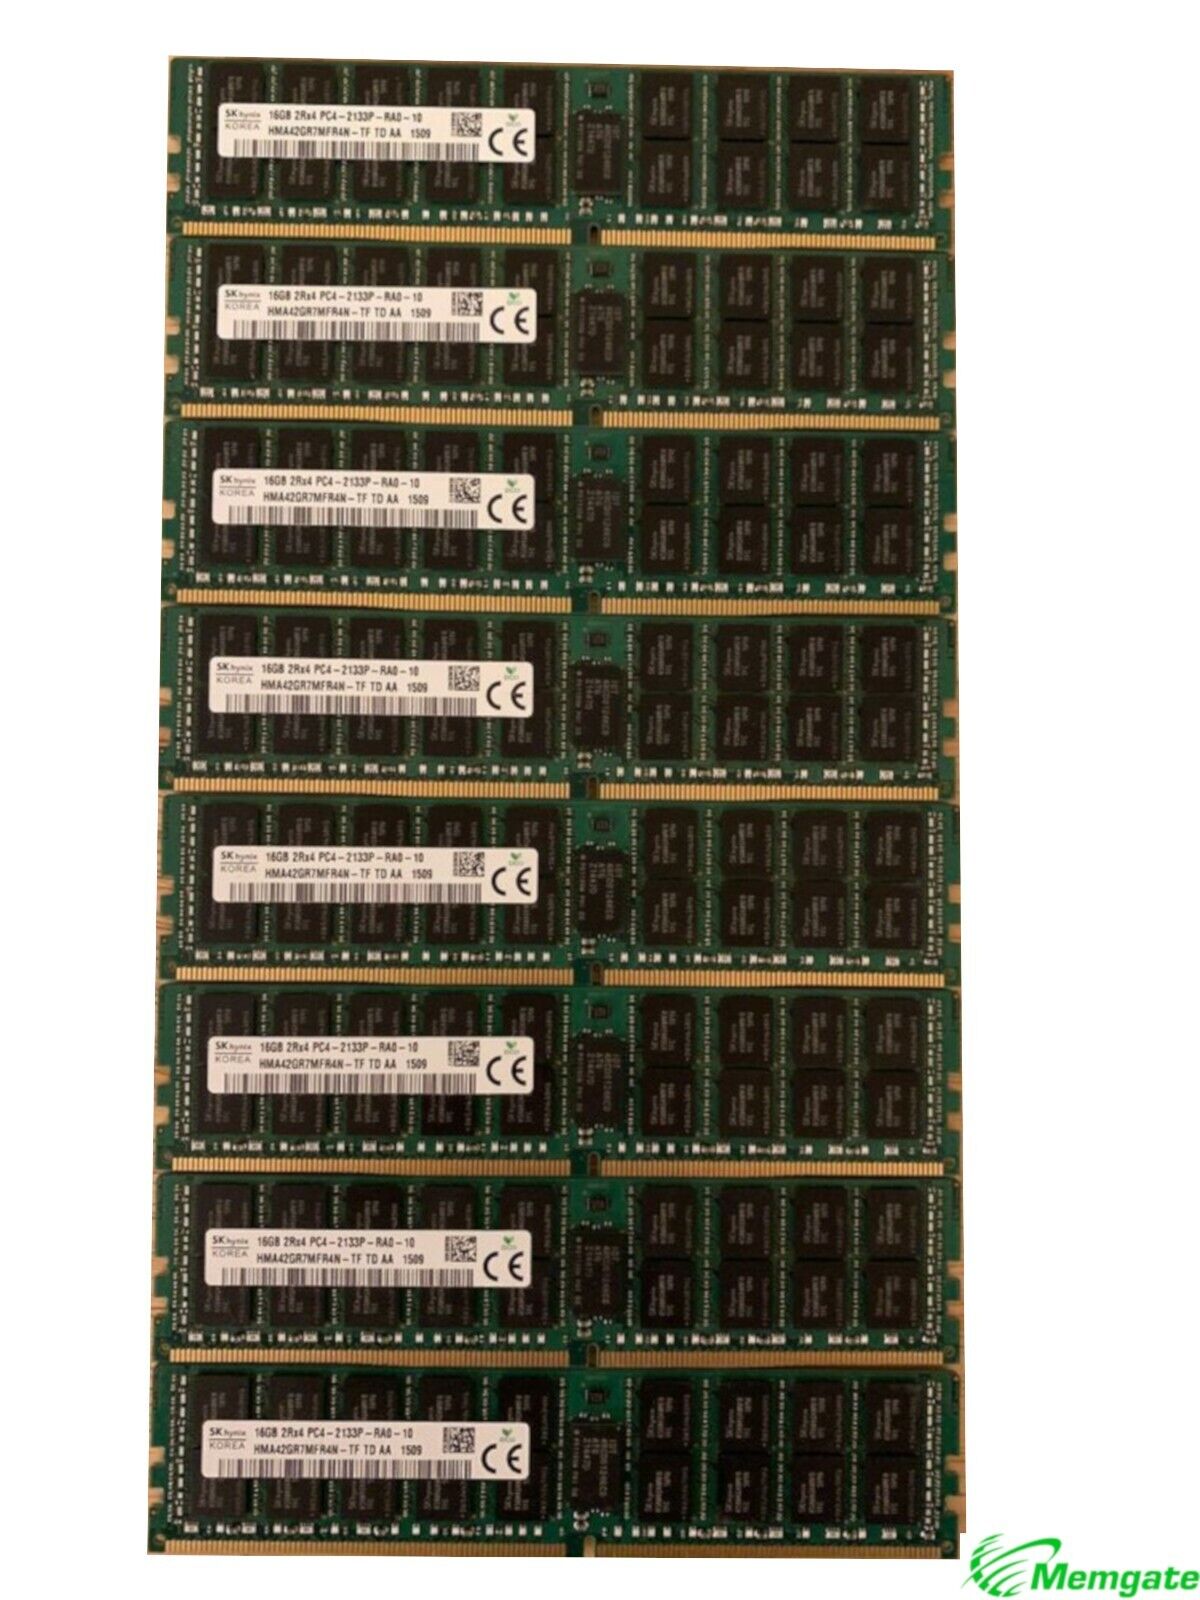 384GB (24x16GB) PC4-17000P-R DDR4 2133P ECC RDIMM Memory for Dell PowerEdge R730